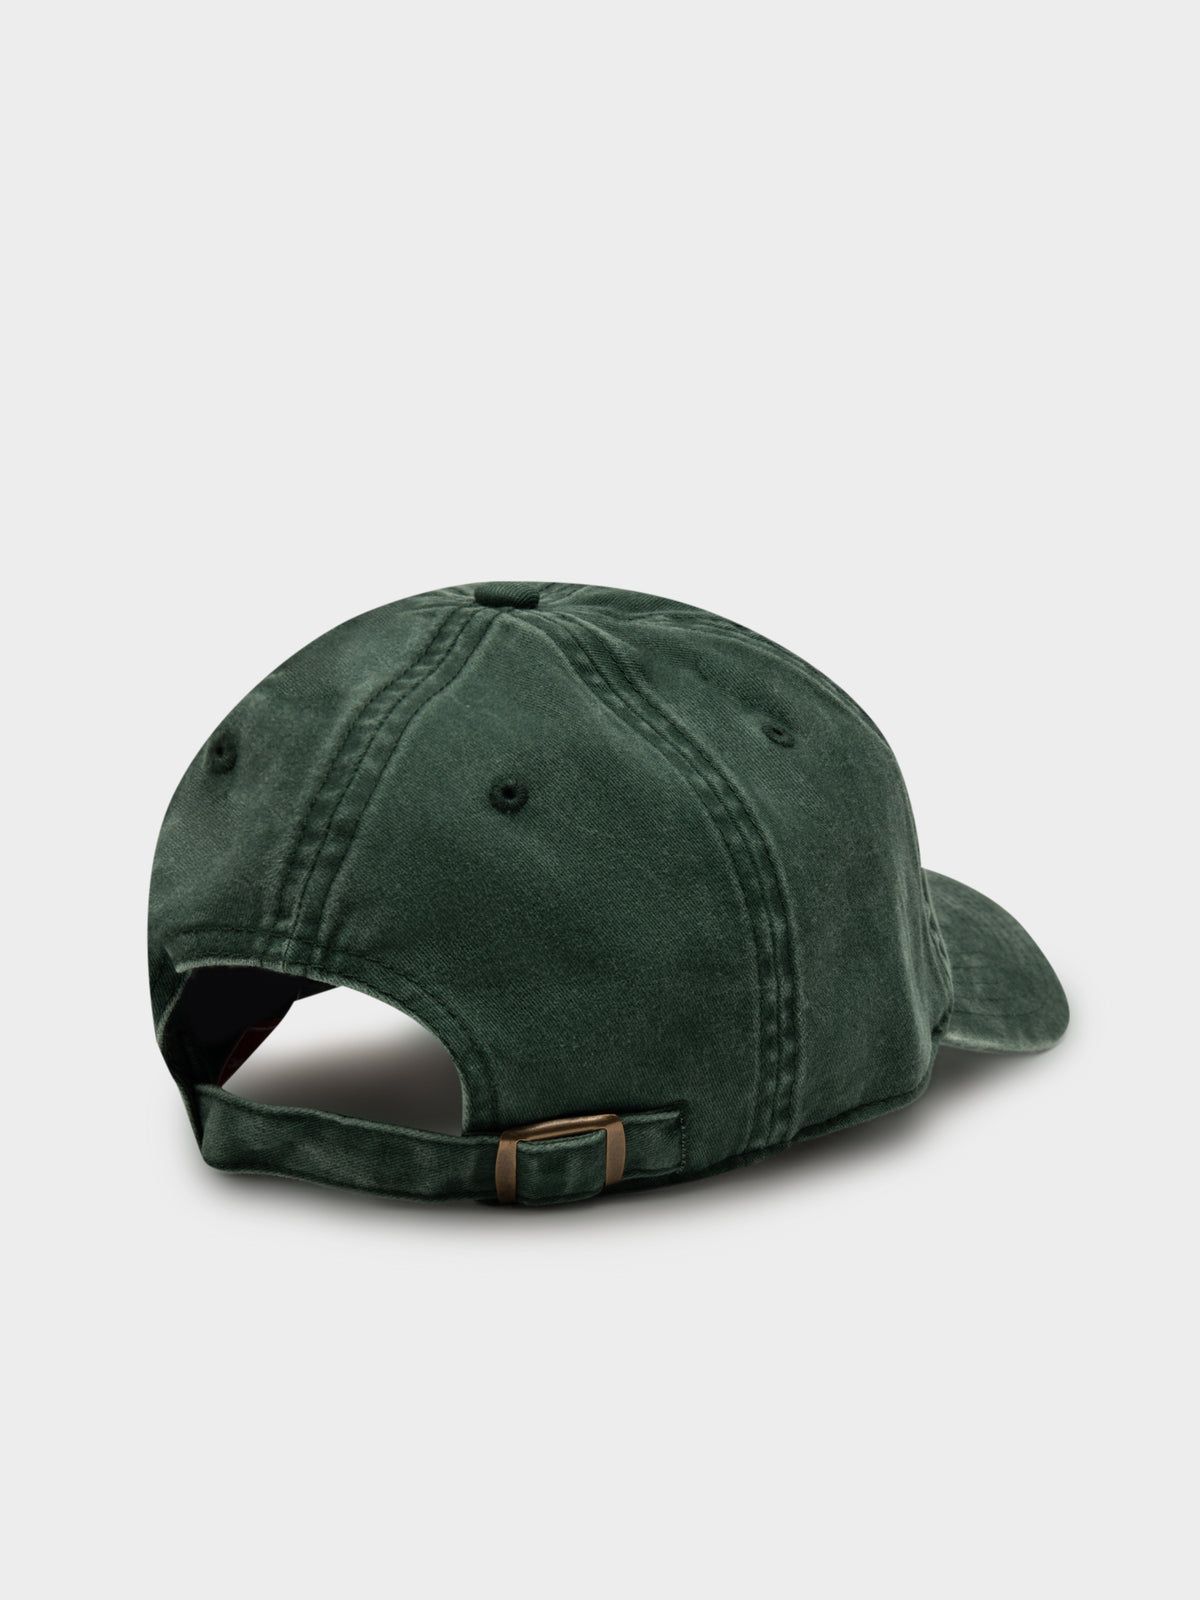 Vintage Sprite Ball Park Cap in Dark Green